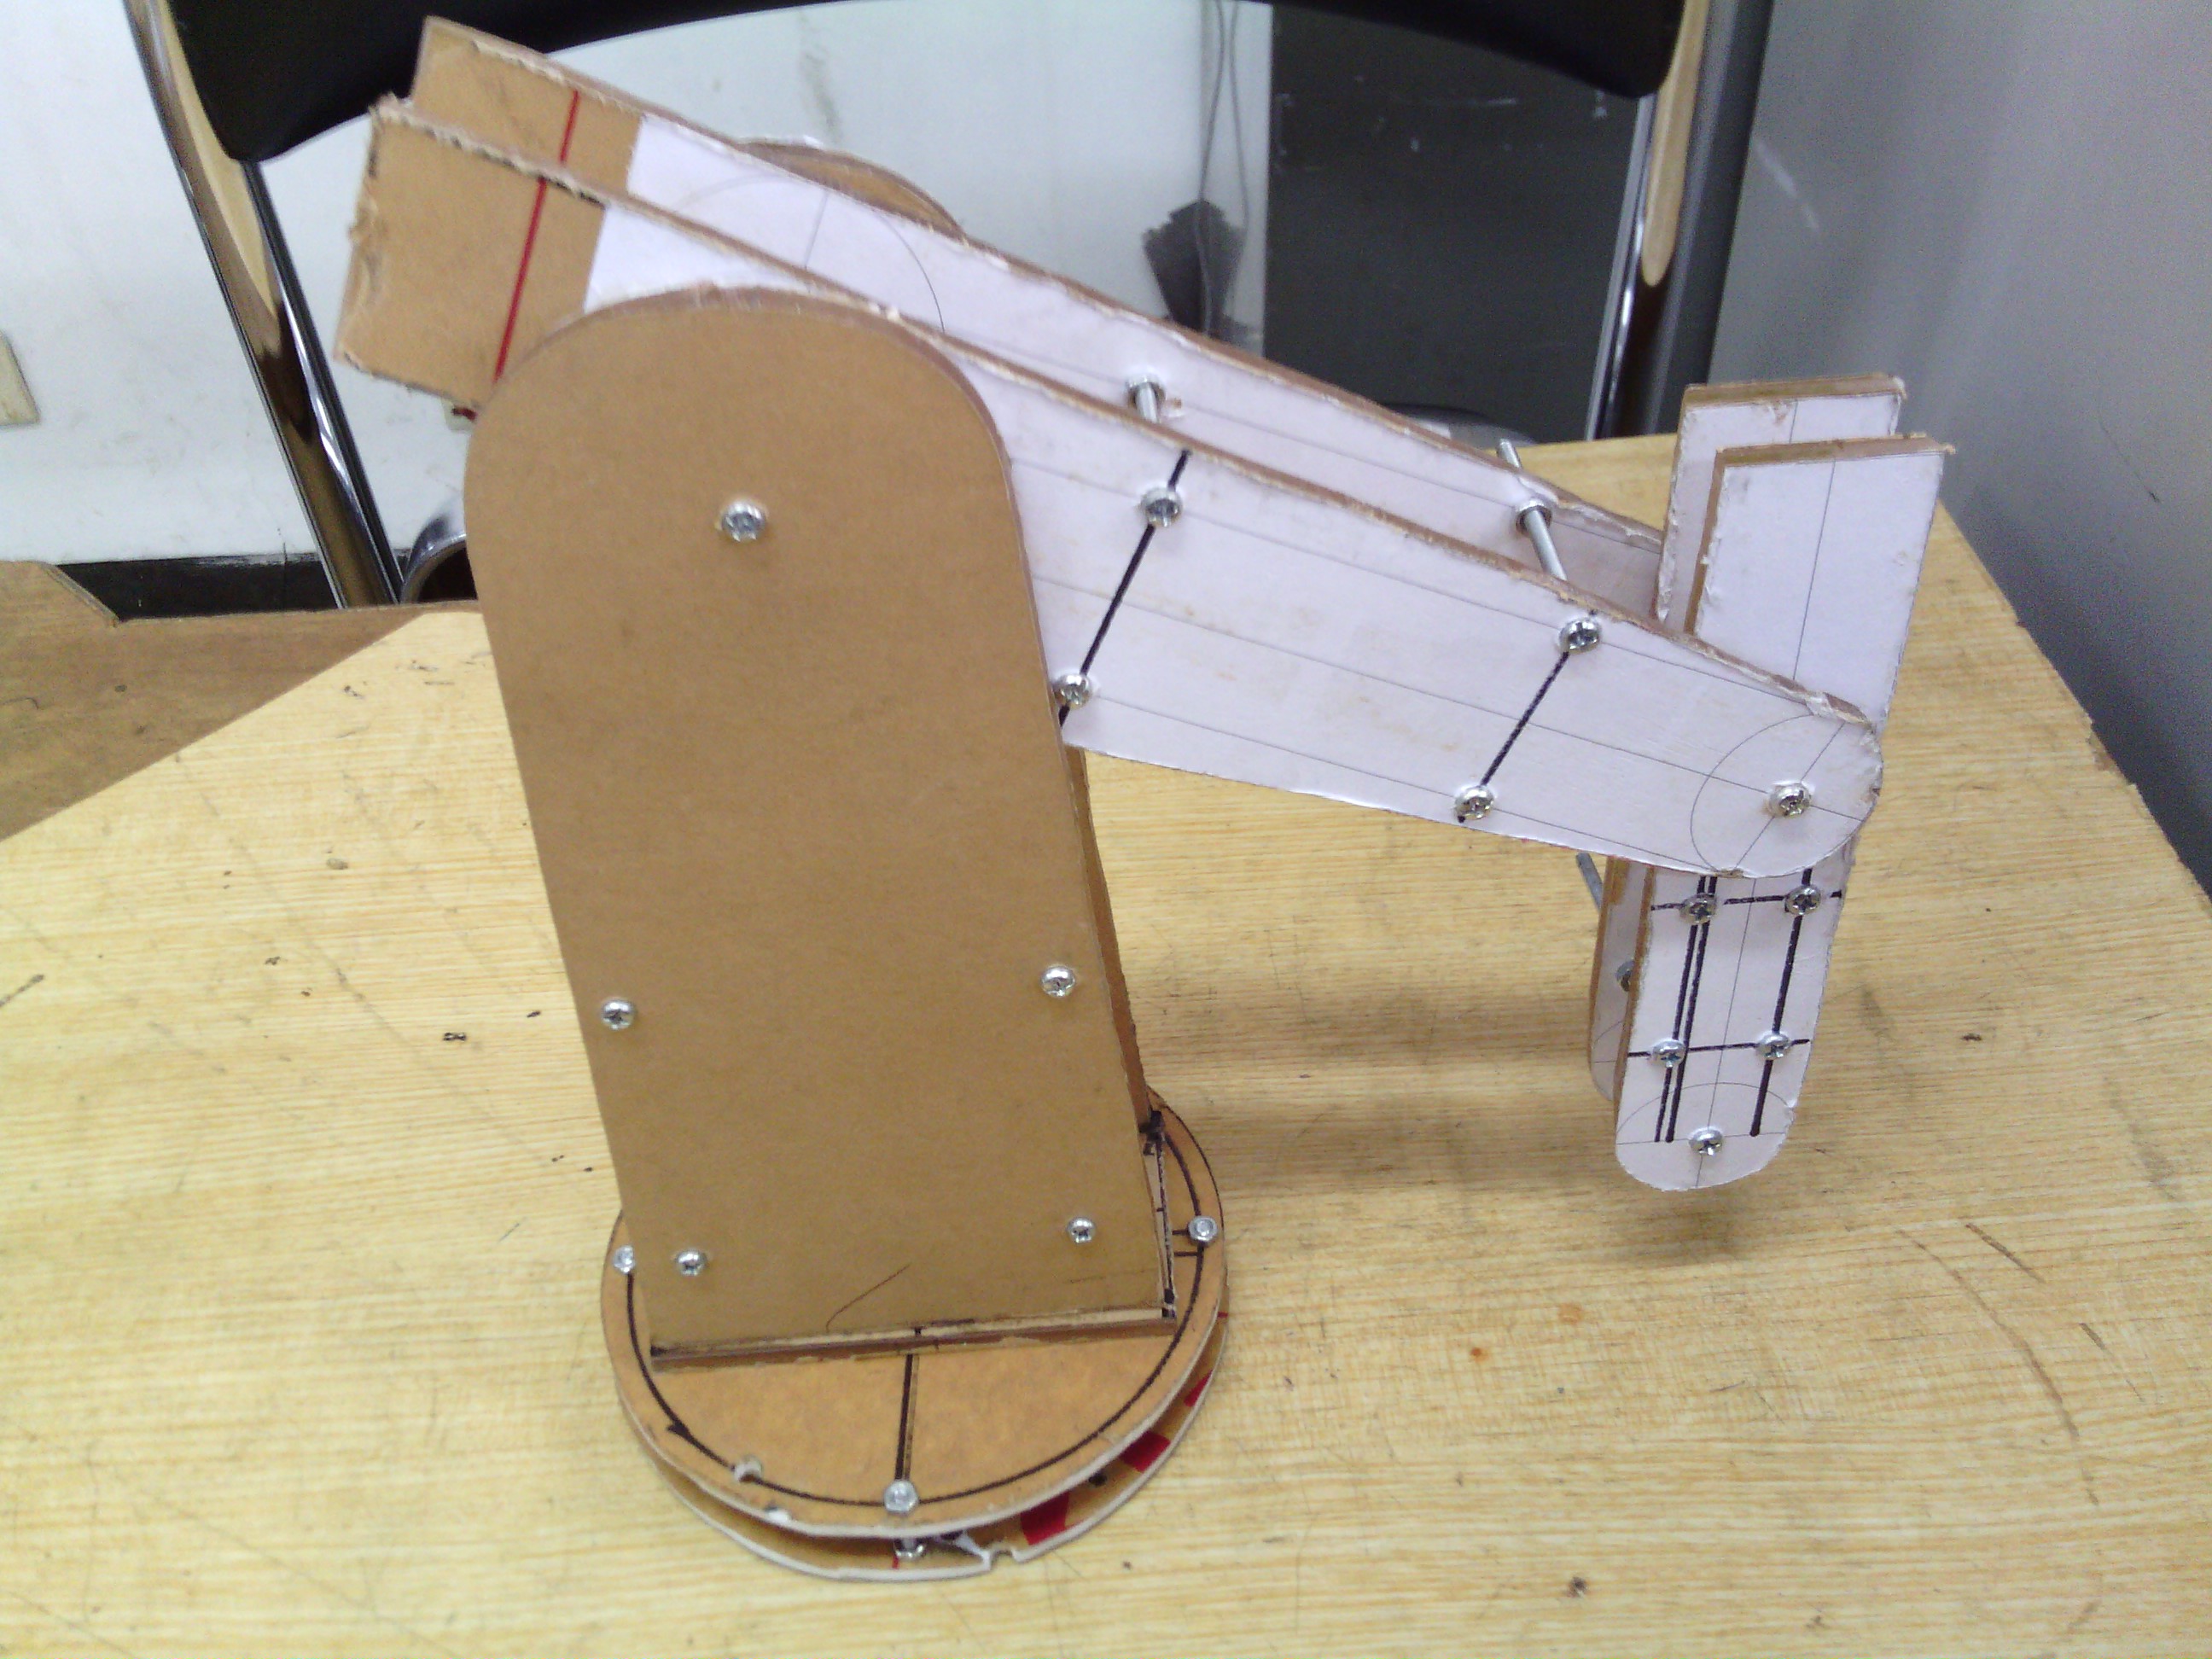 Membuat Lengan Robot Hidrolik Sederhana Utakatikmikros Blog